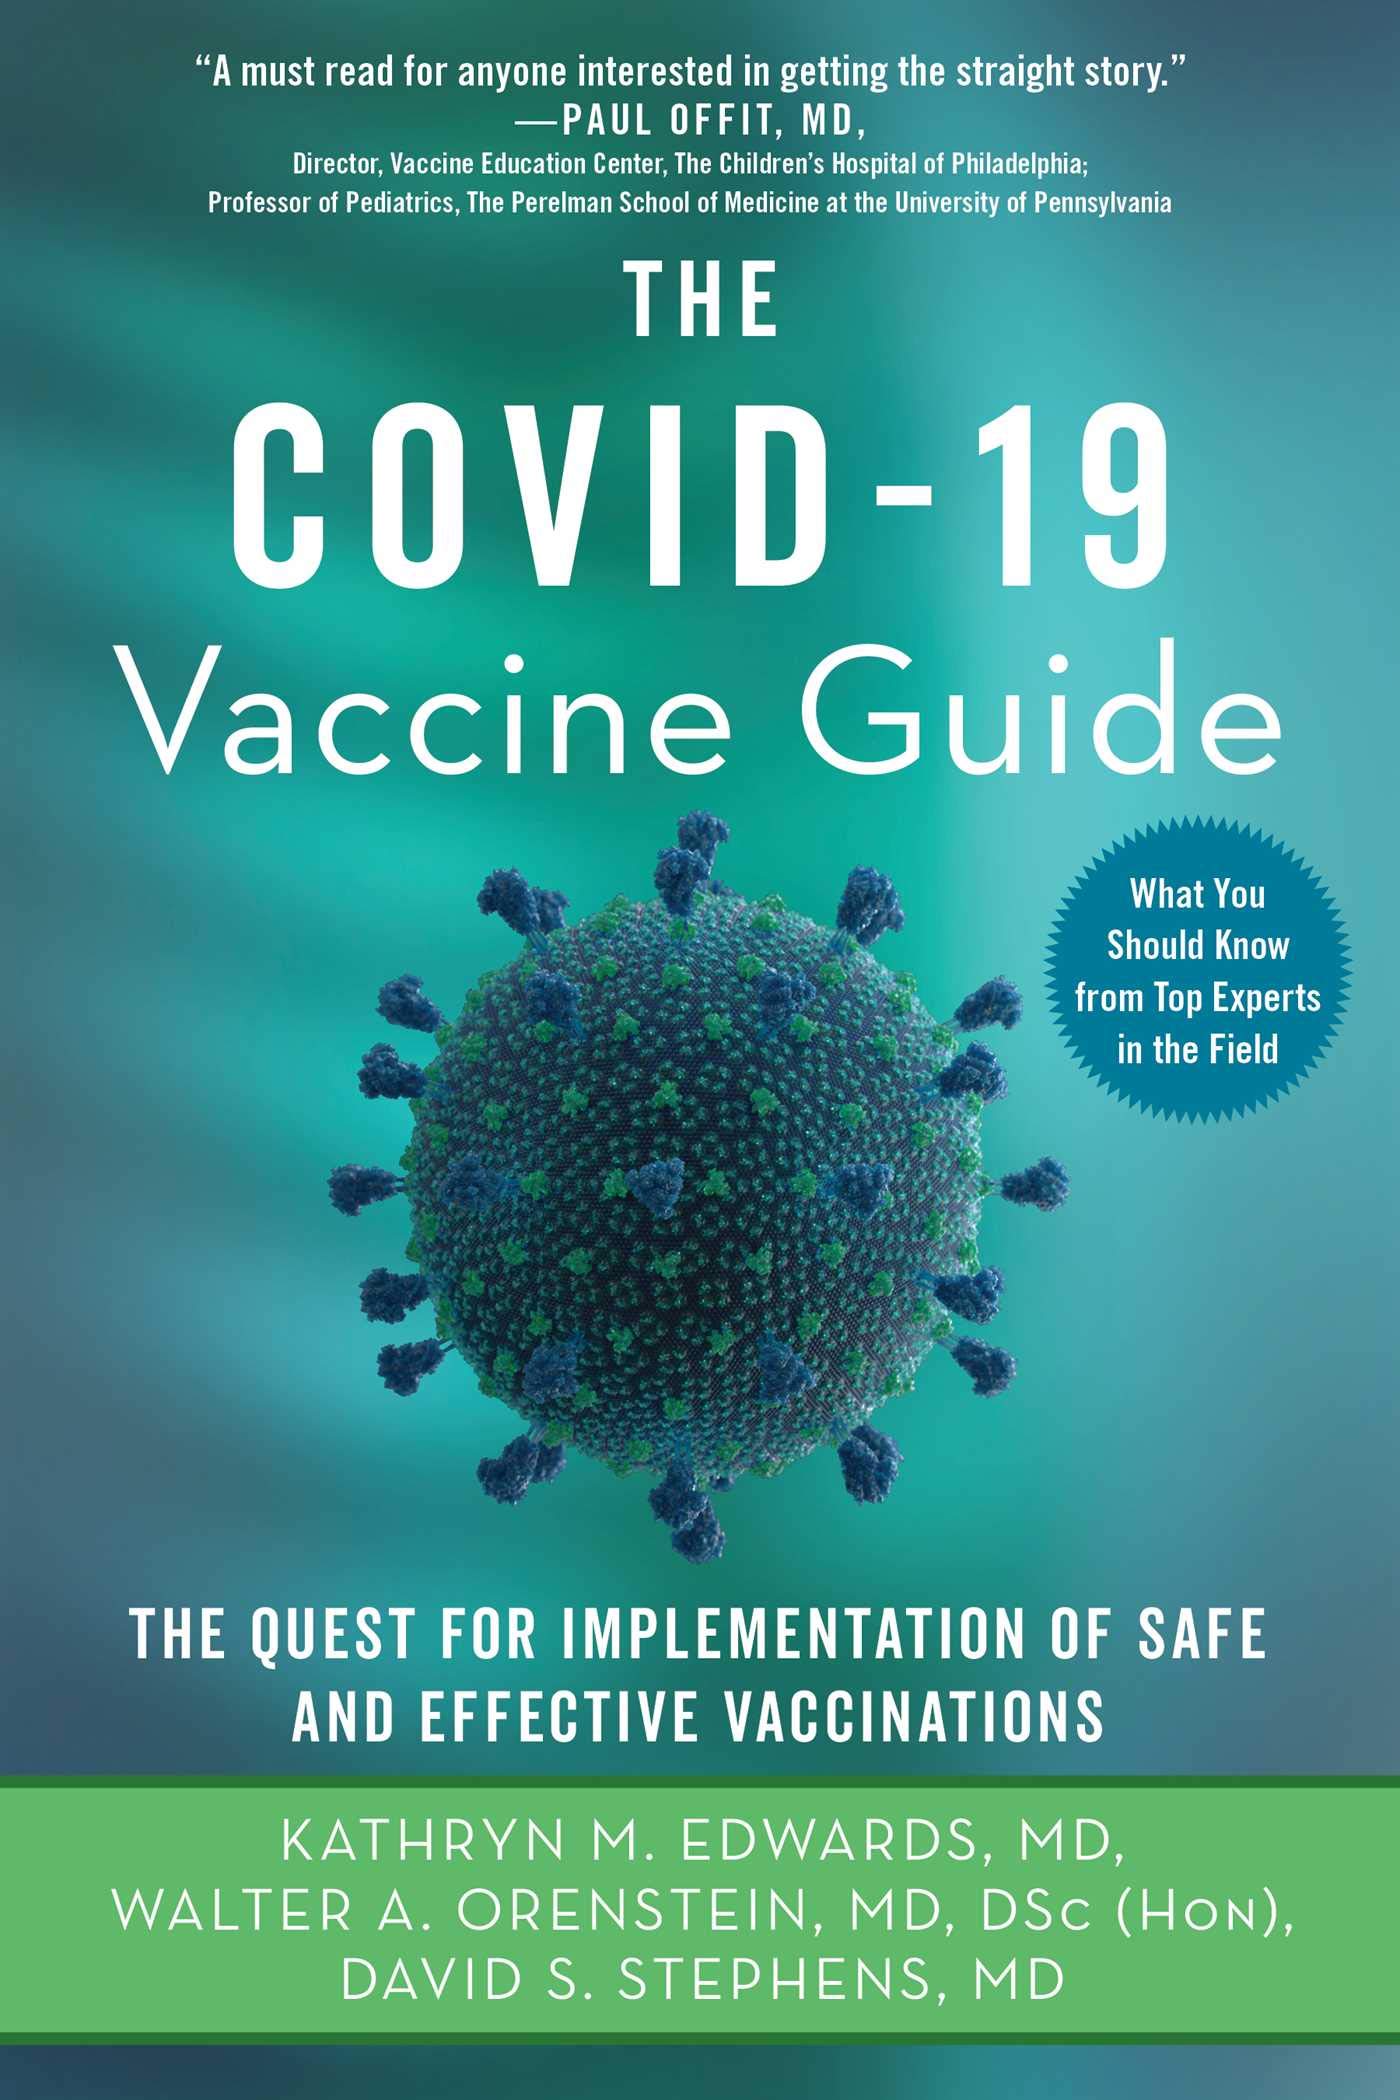 The COVID-19 Vaccine Guide